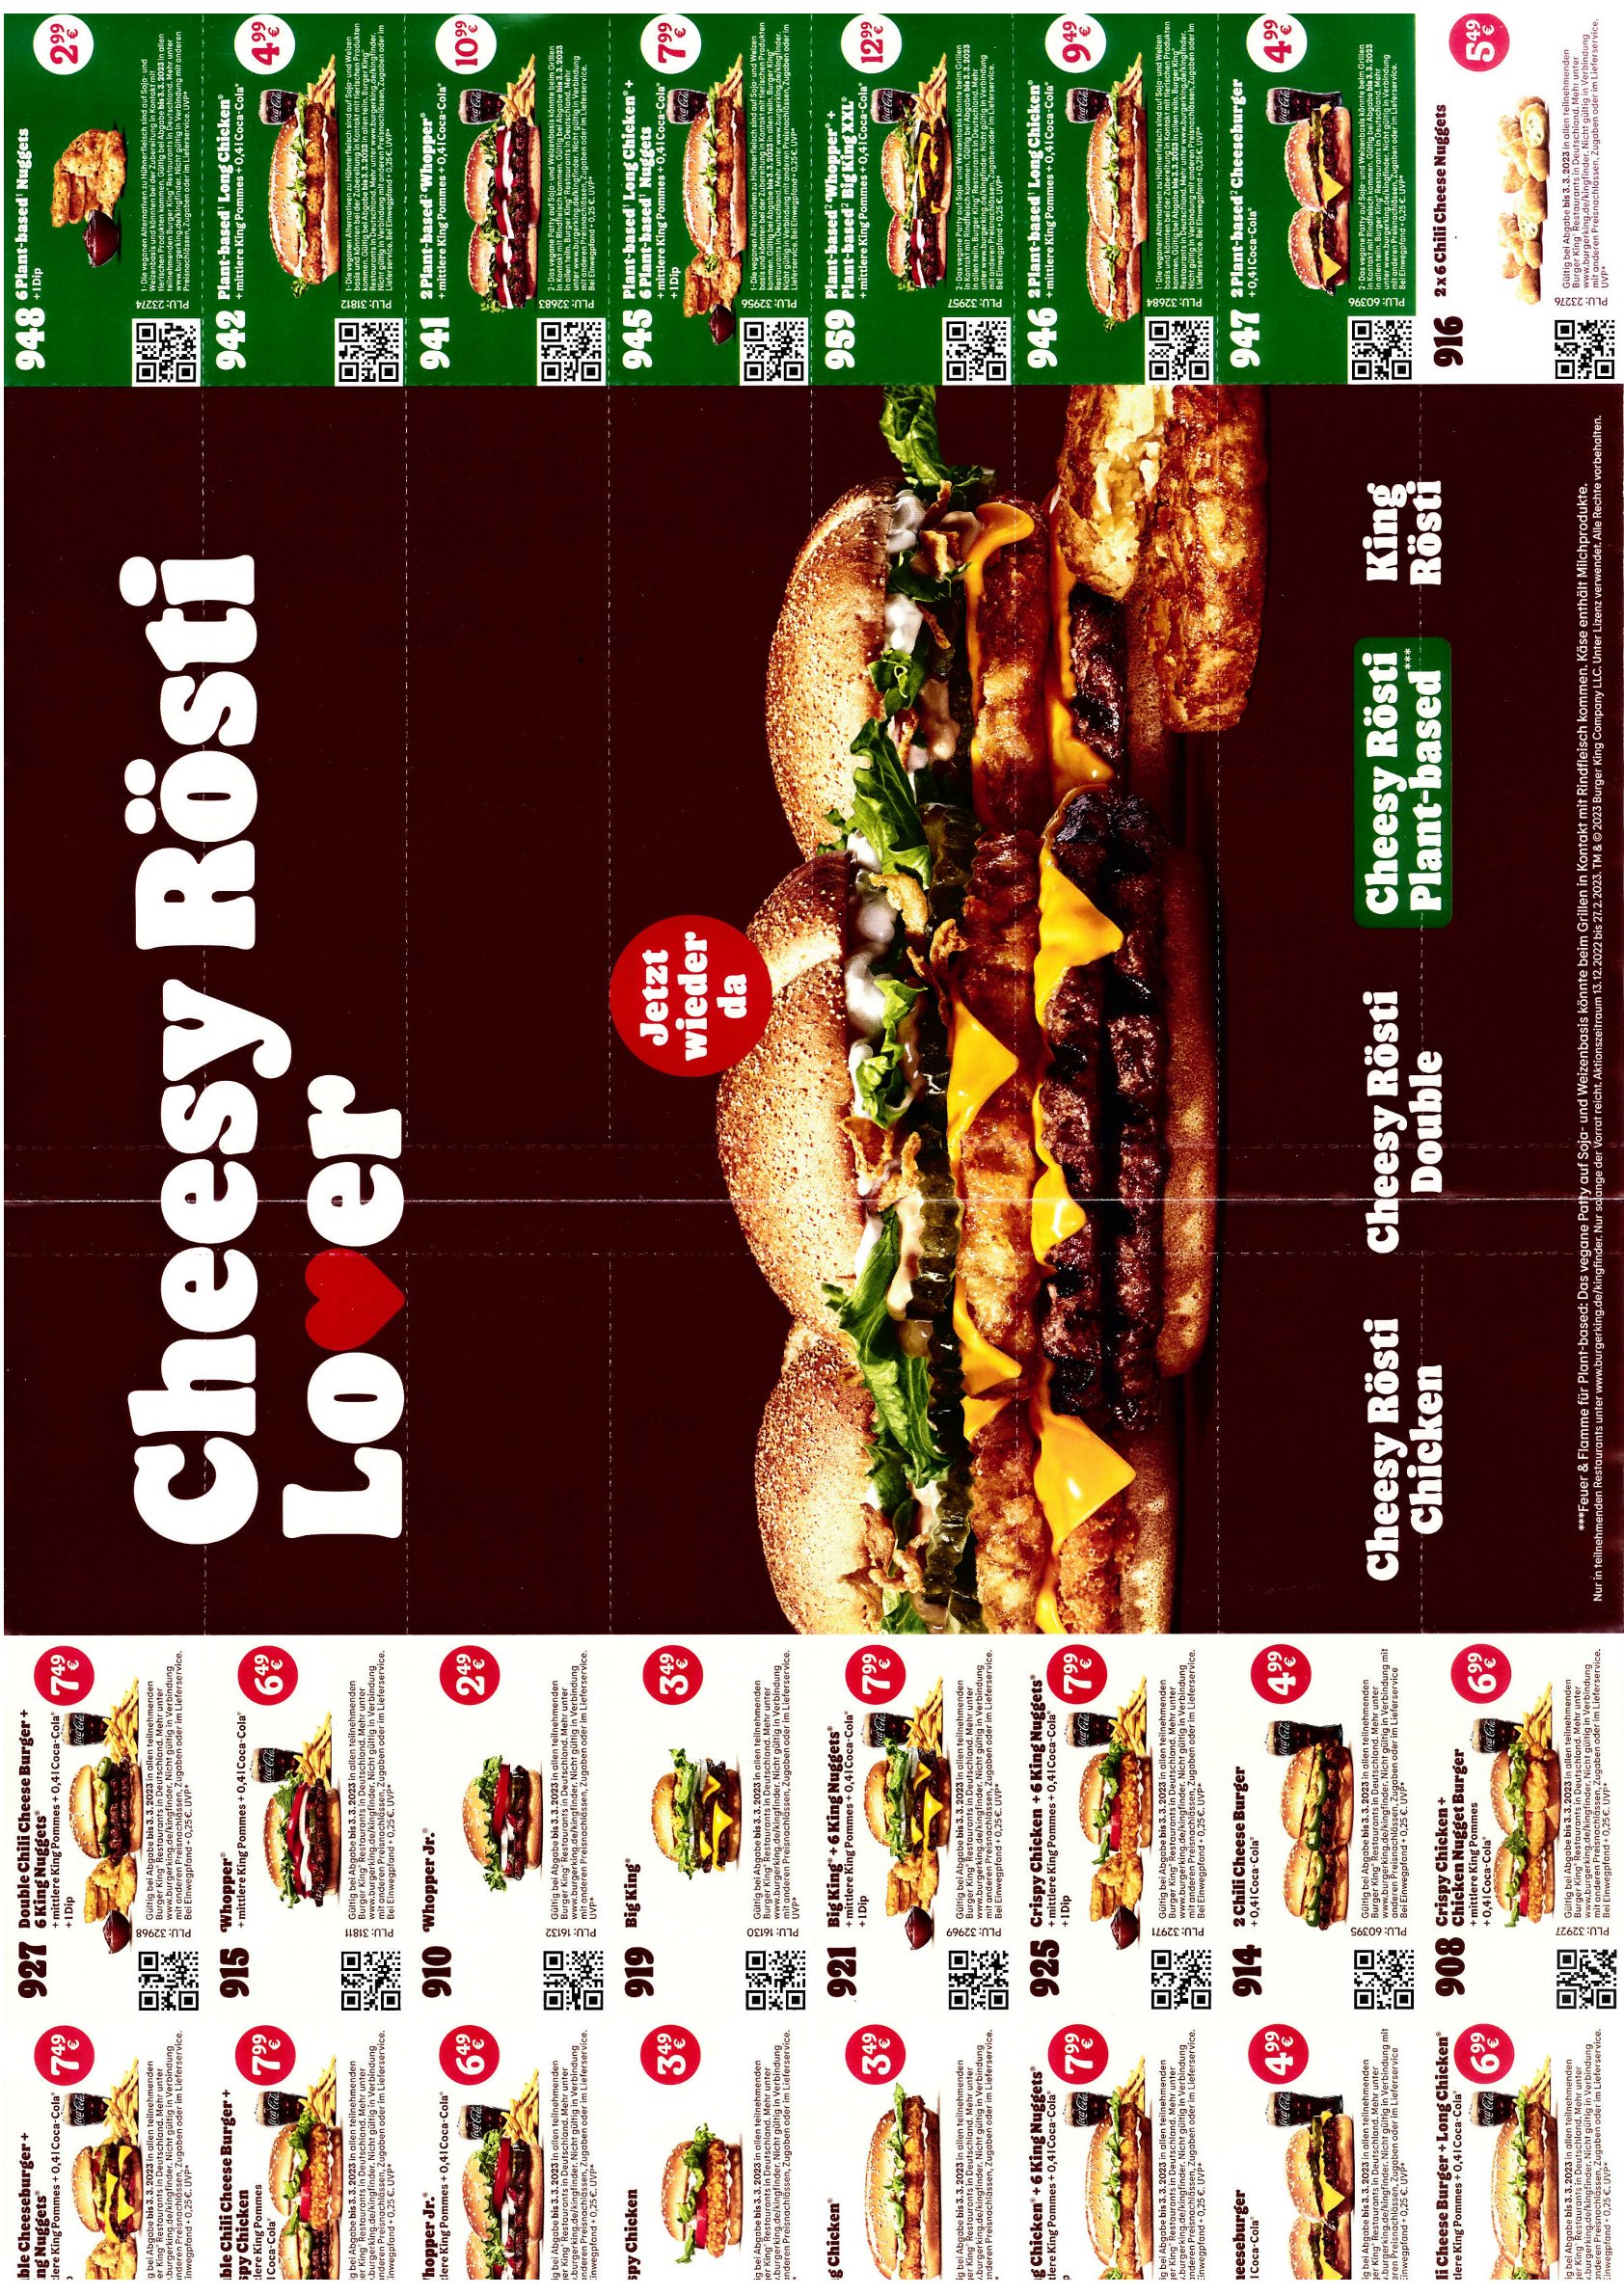 [Burger King] BK Coupons/Gutscheine gültig ab SA 07.01.2023 FR 03.03.